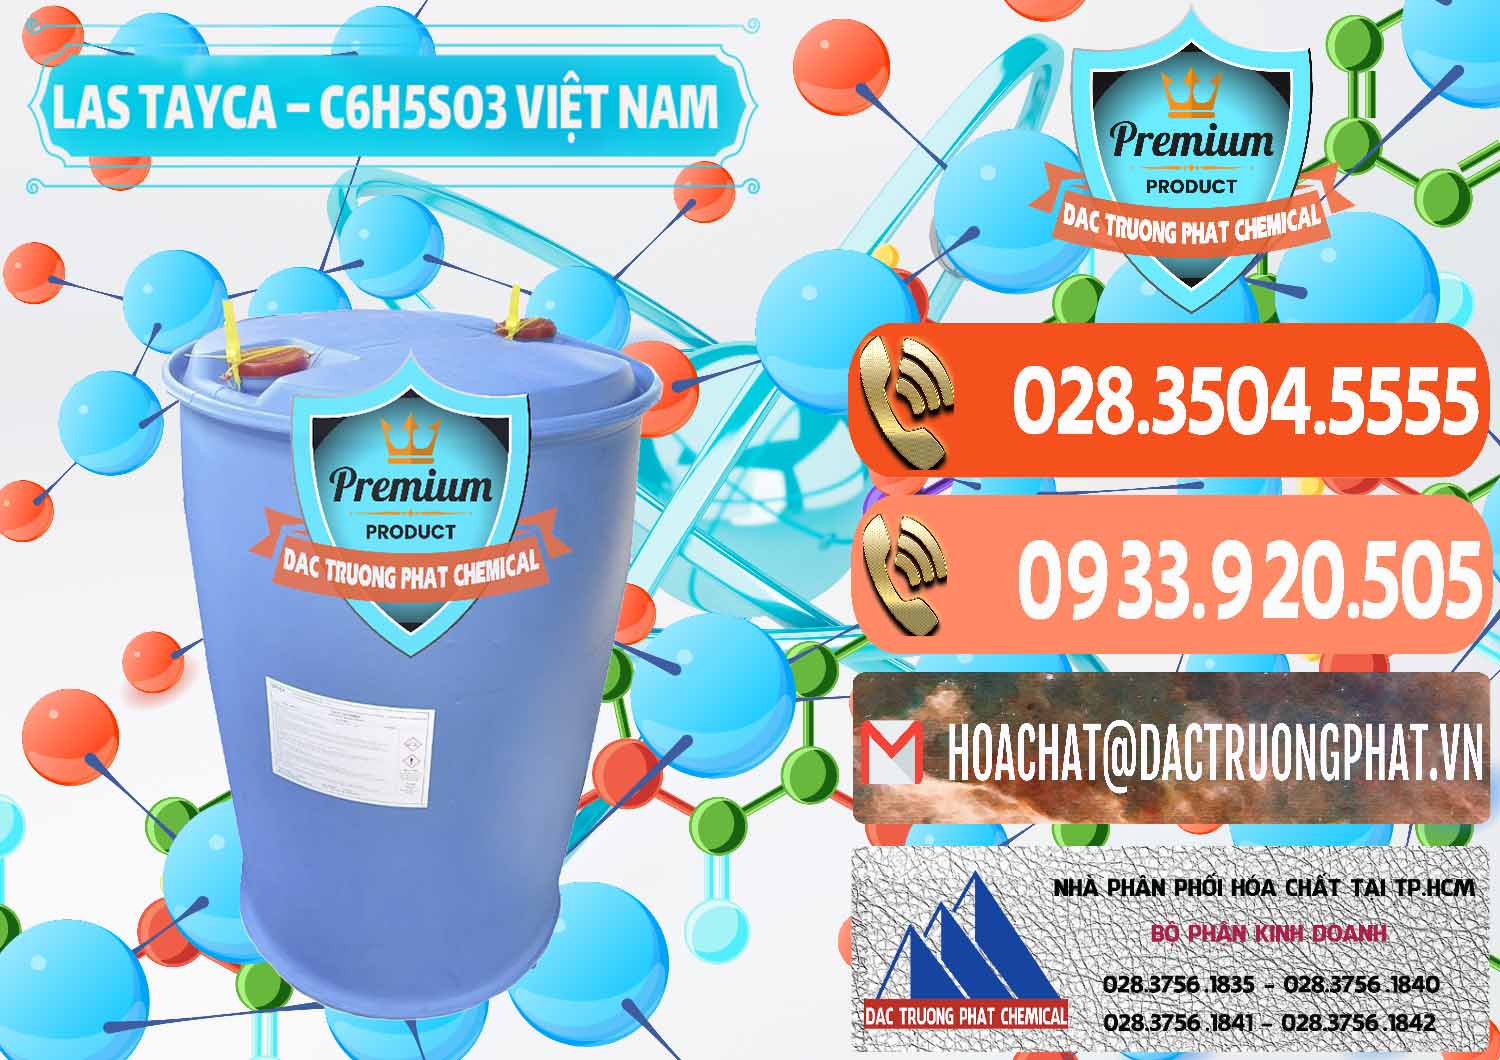 Công ty chuyên cung cấp & bán Chất tạo bọt Las Tayca Việt Nam - 0305 - Cty cung cấp & phân phối hóa chất tại TP.HCM - hoachatmientay.com